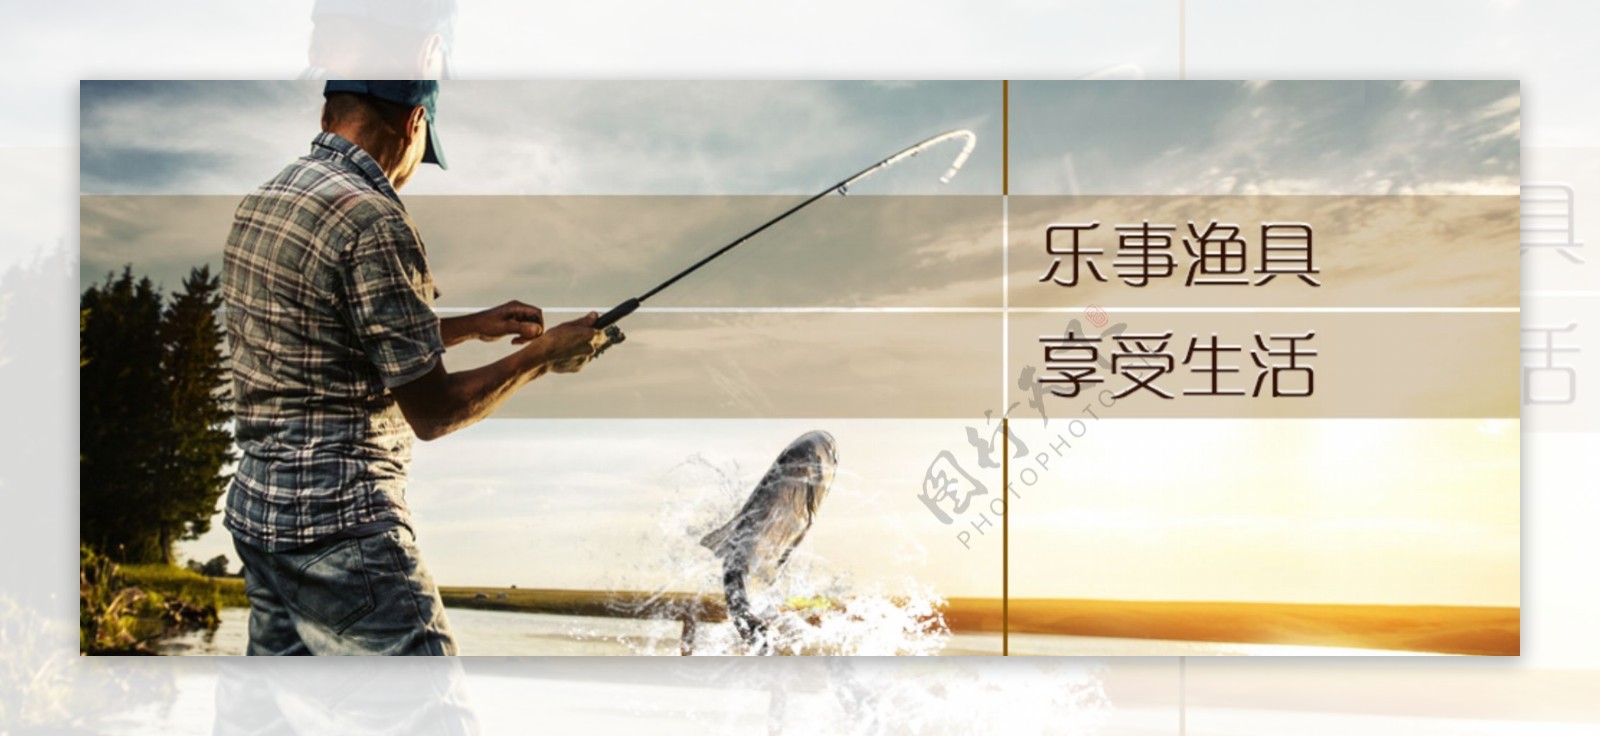 渔具生活BNNER